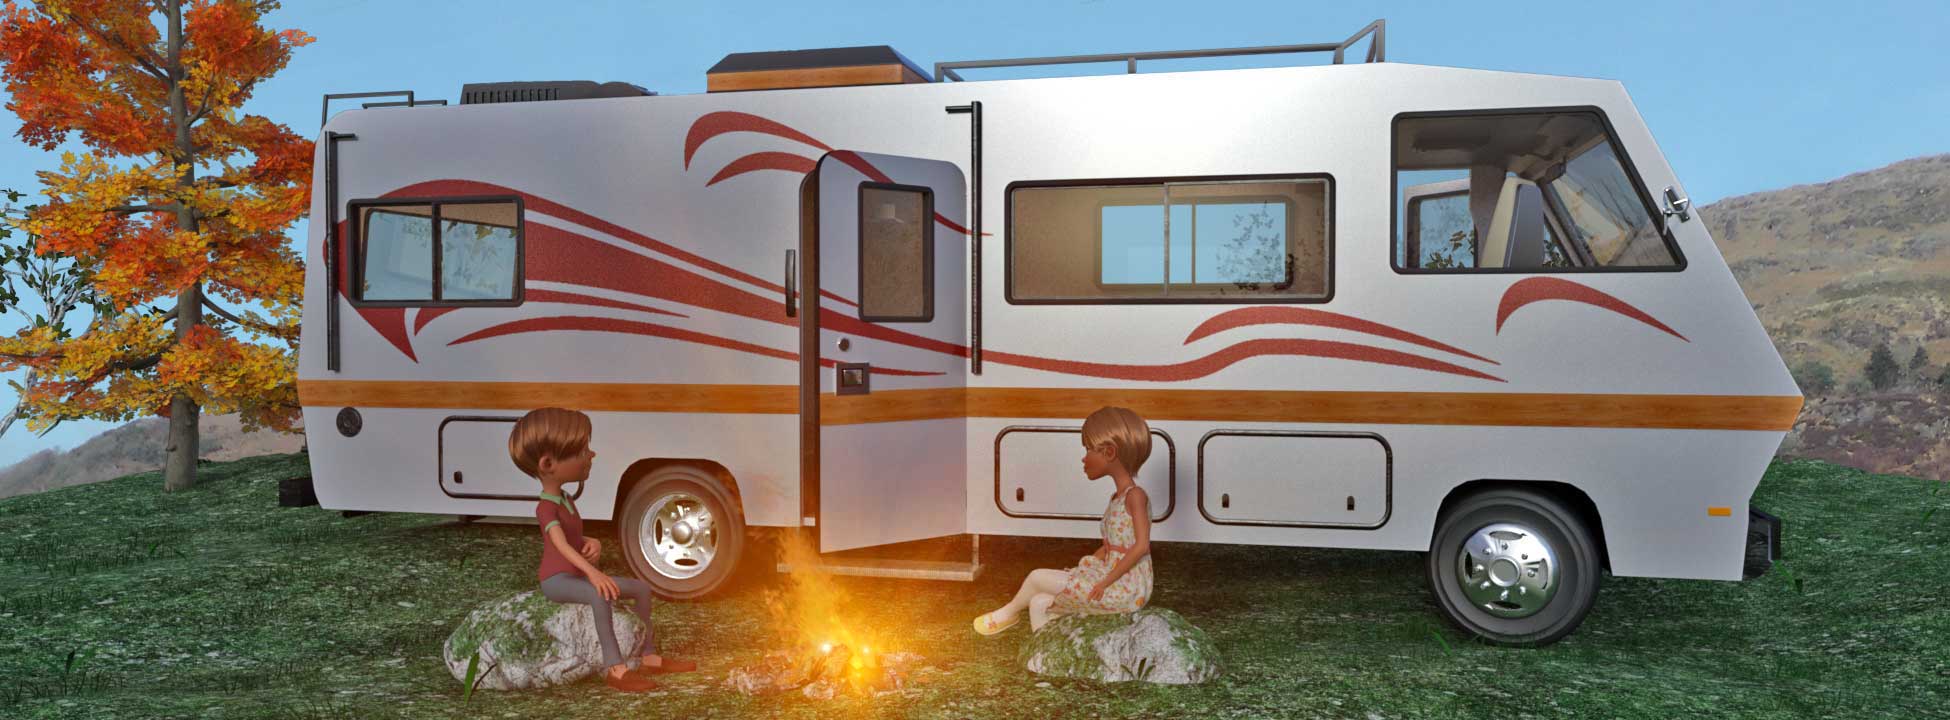 campervan image